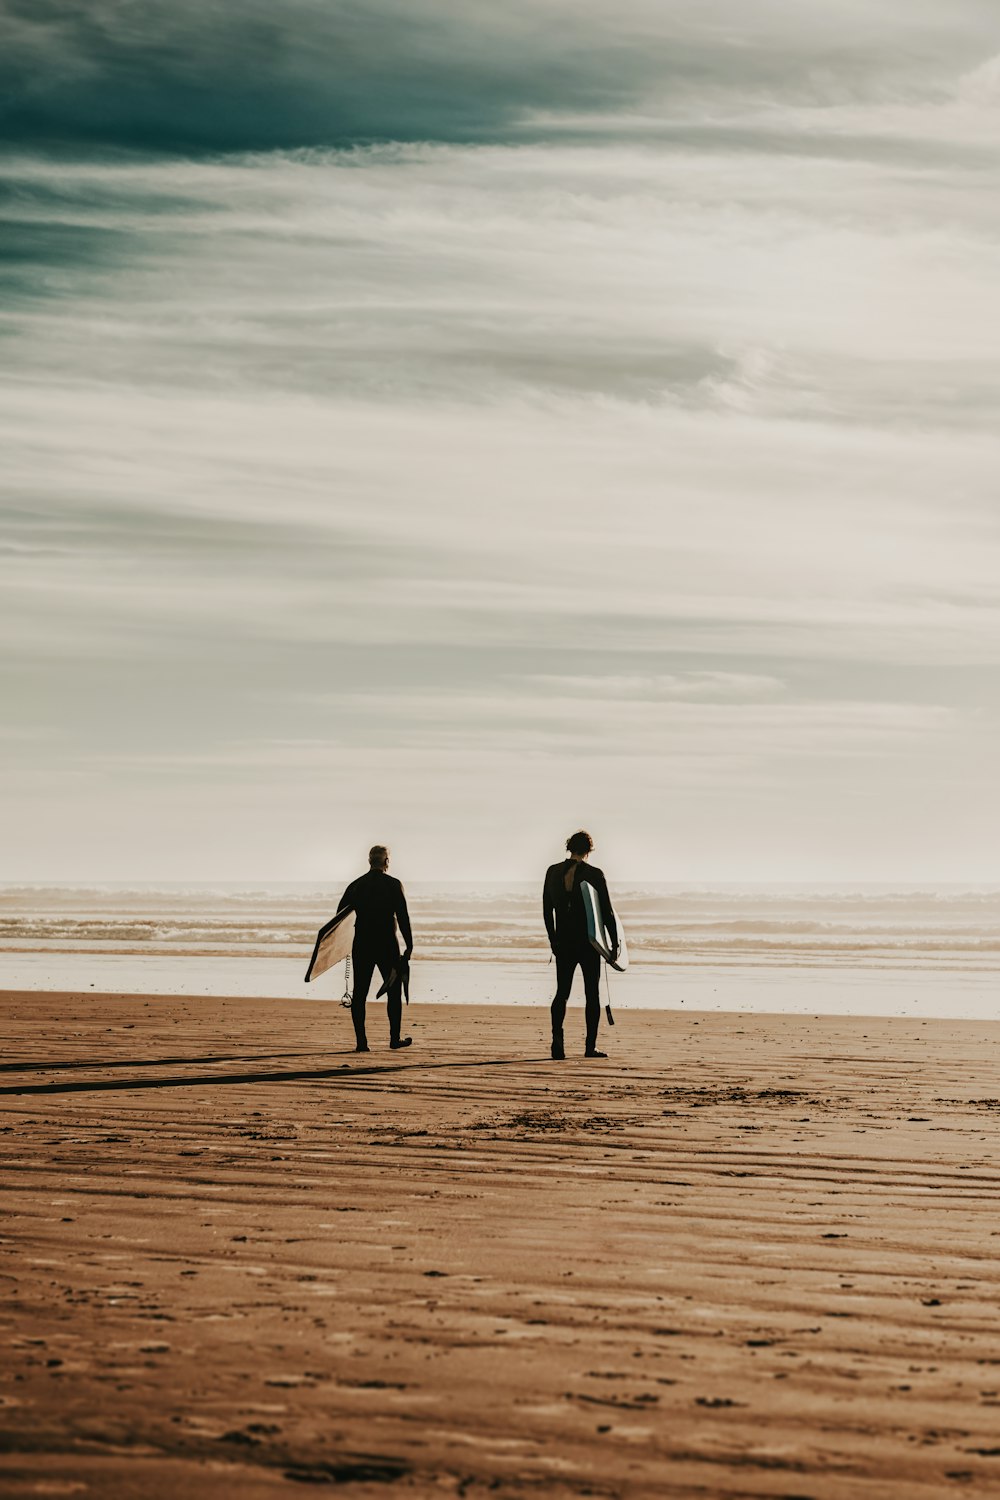 Dos surfistas caminando por la playa con sus tablas